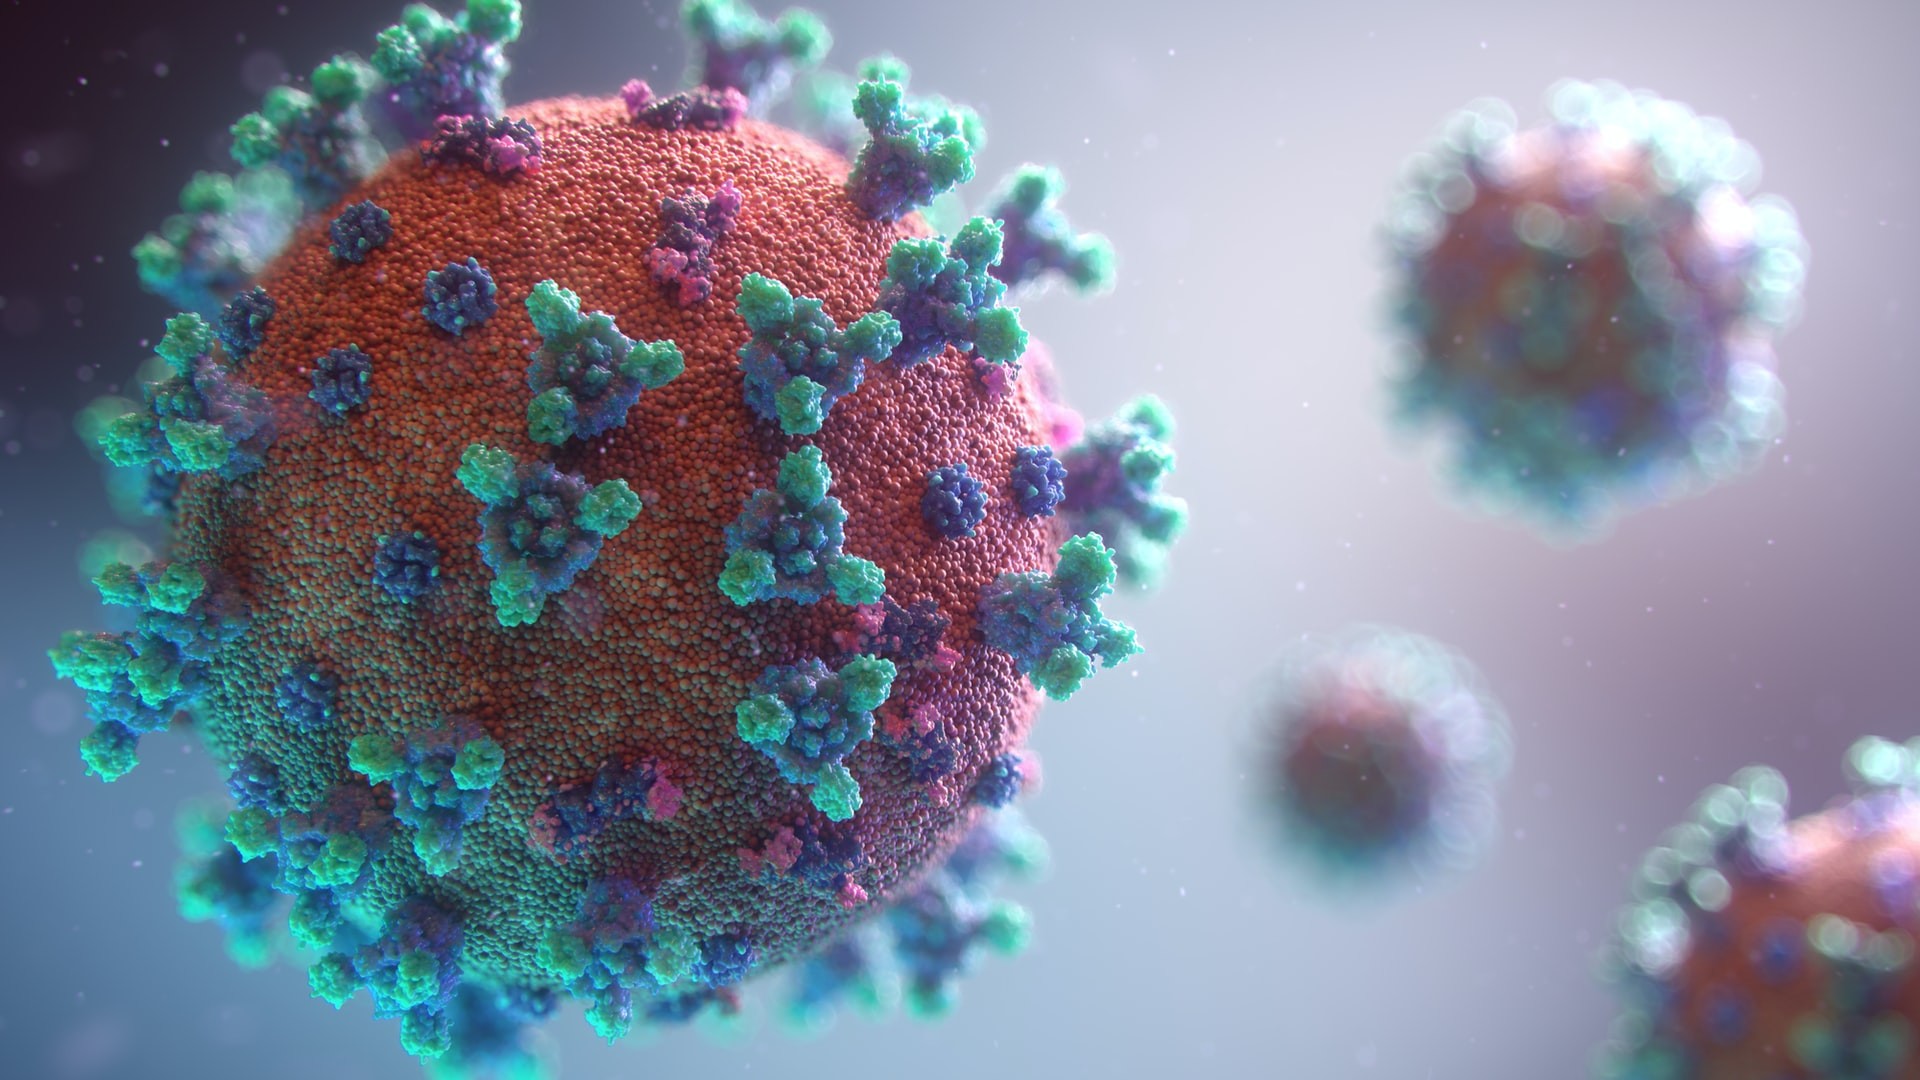  Sistema cria ranking de novas espécies de vírus com potencial de provocar pandemias (Foto: Fusion Medical Animation/Unsplash)